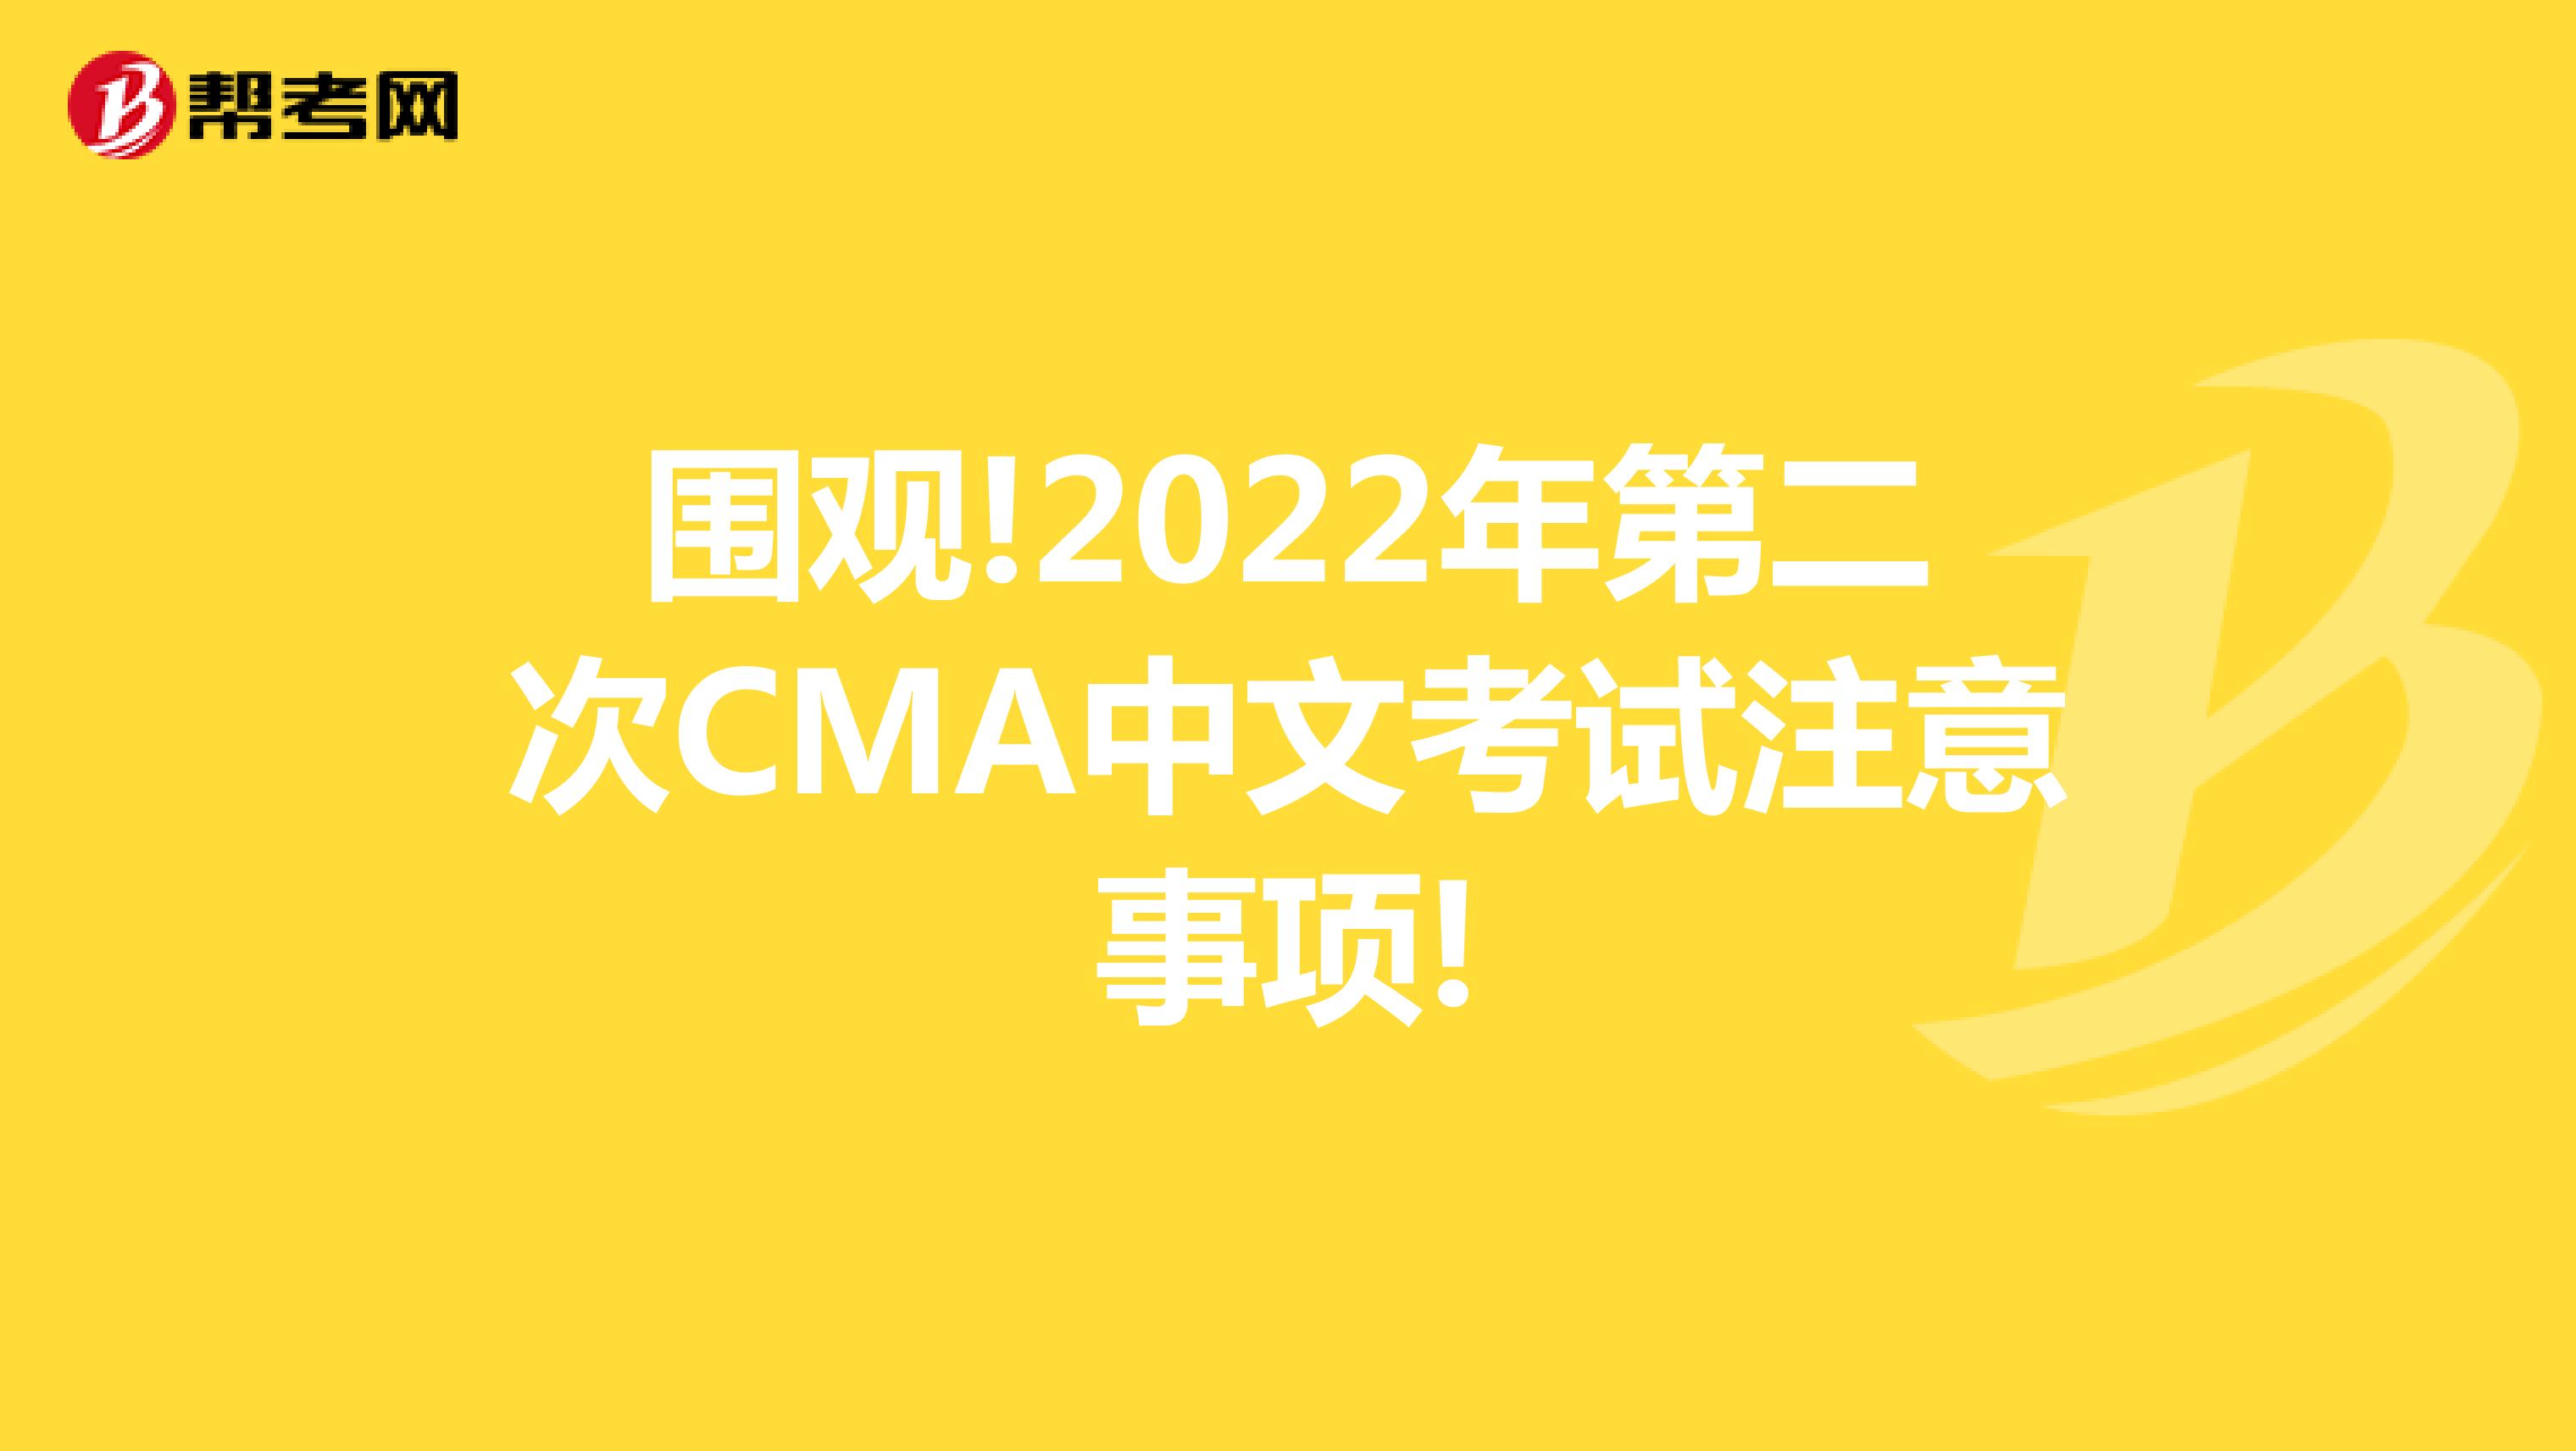 围观!2022年第二次CMA中文考试注意事项!